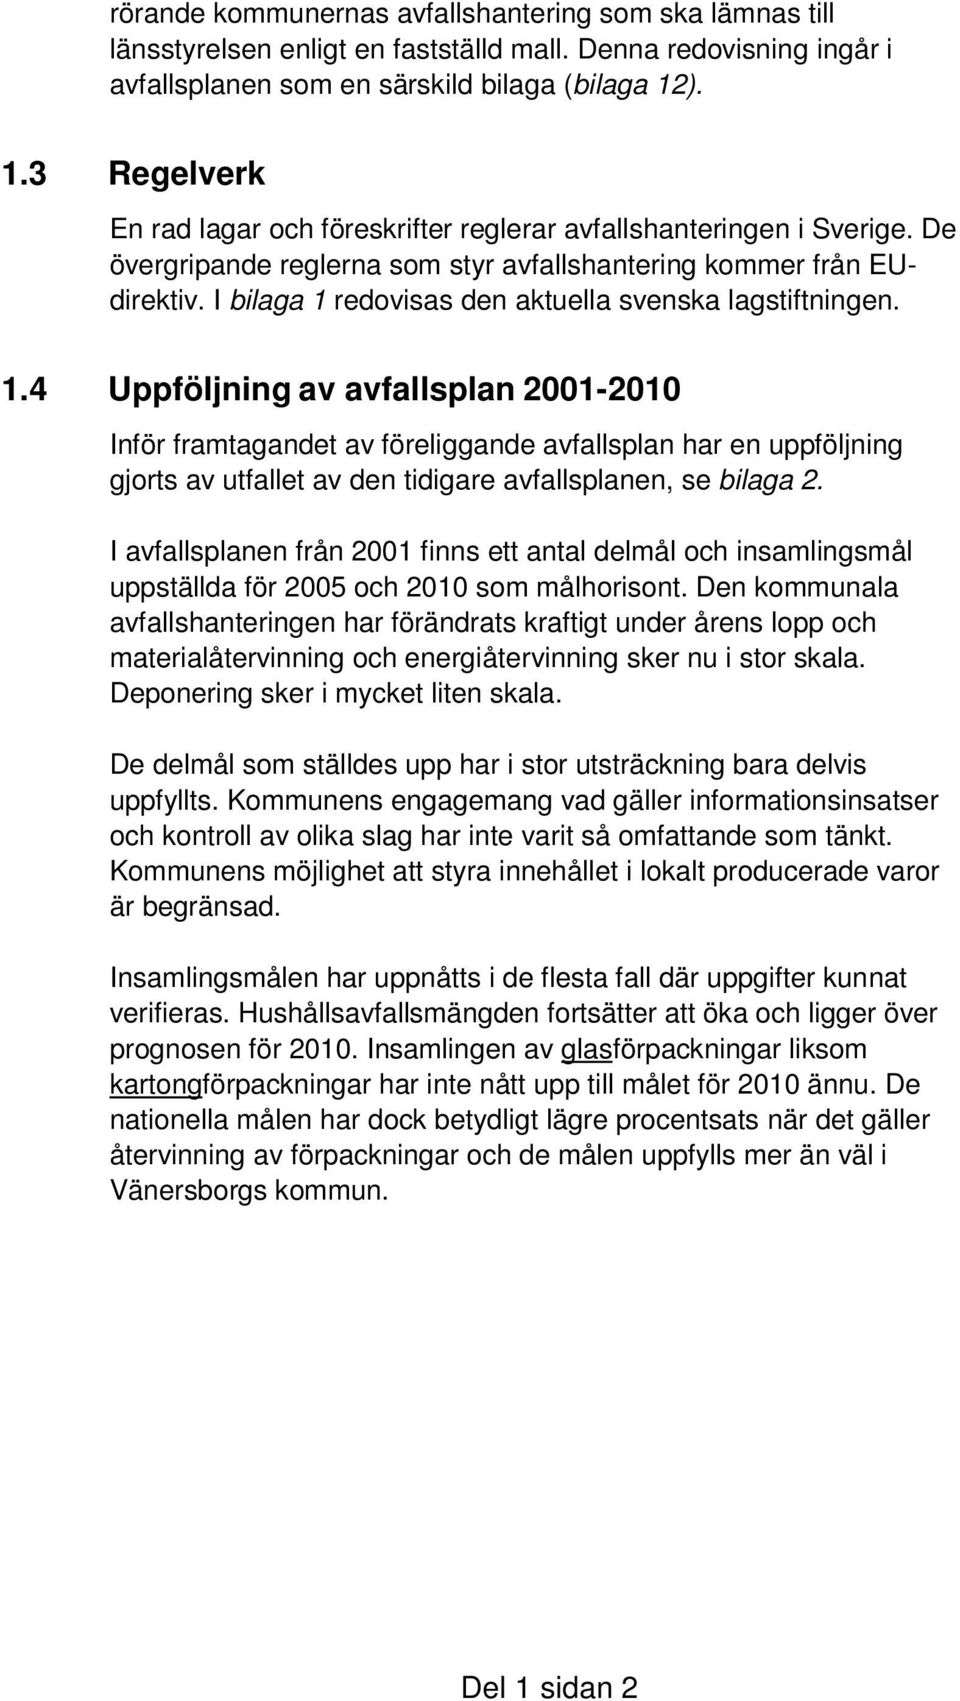 I bilaga 1 redovisas den aktuella svenska lagstiftningen. 1.4 Uppföljning av avfallsplan 2001-2010 Inför framtagandet av föreliggande avfallsplan har en uppföljning gjorts av utfallet av den tidigare avfallsplanen, se bilaga 2.